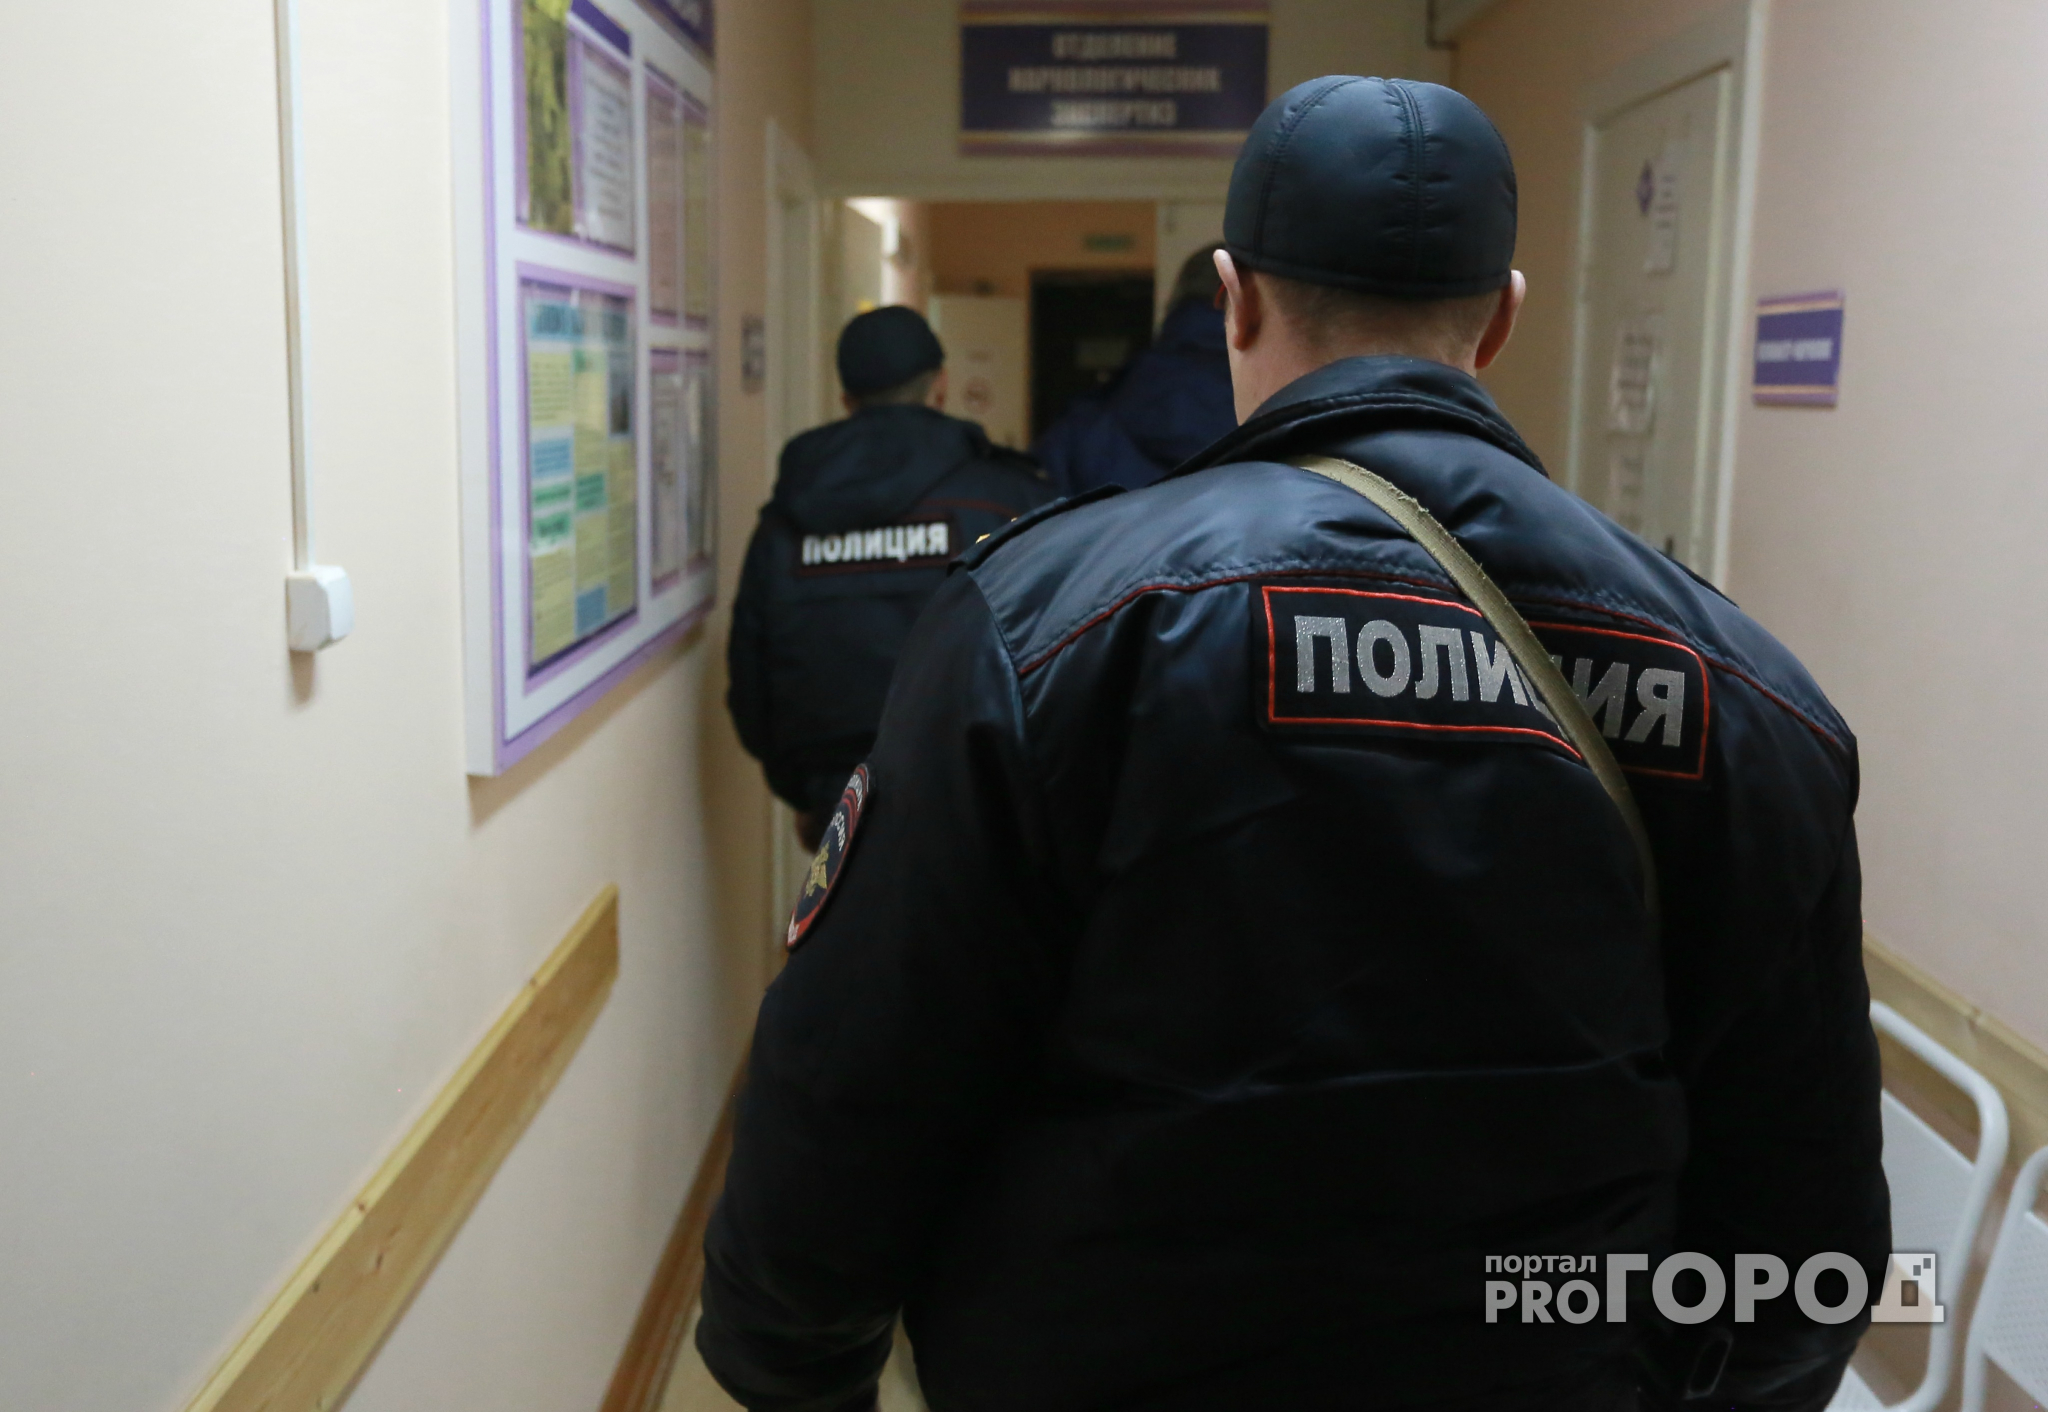 Воспитанник детдома ранил ножом двоих полицейских в Вологодской области